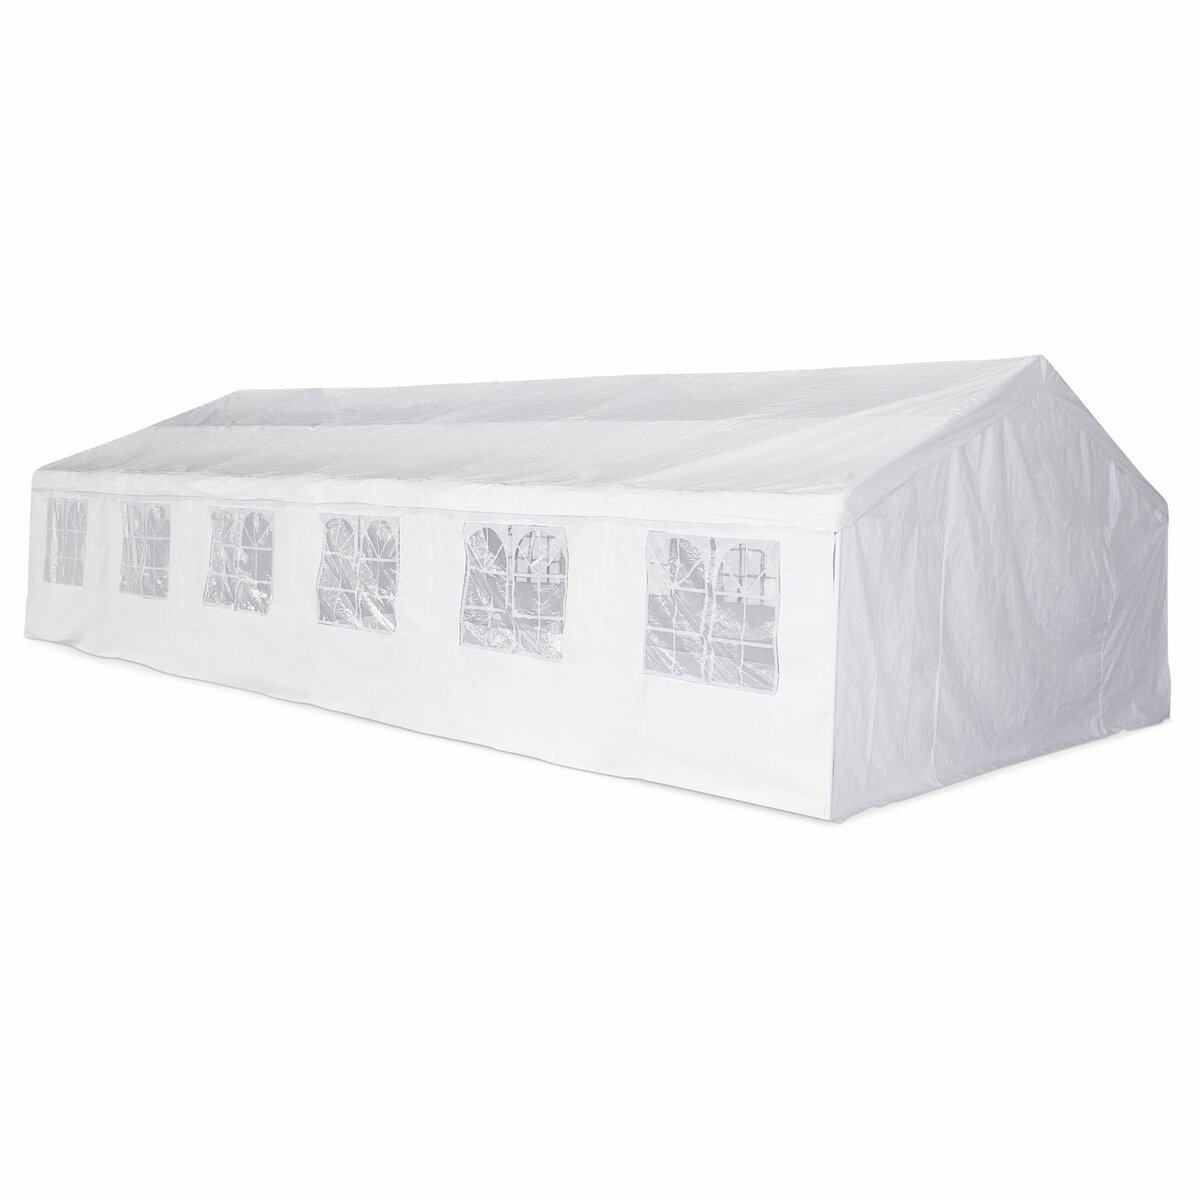 SWEEEK Tente de réception 6 x 12 m - Lutecia -  Blanc - tente de jardin idéale pour réception à utiliser comme pavillon.